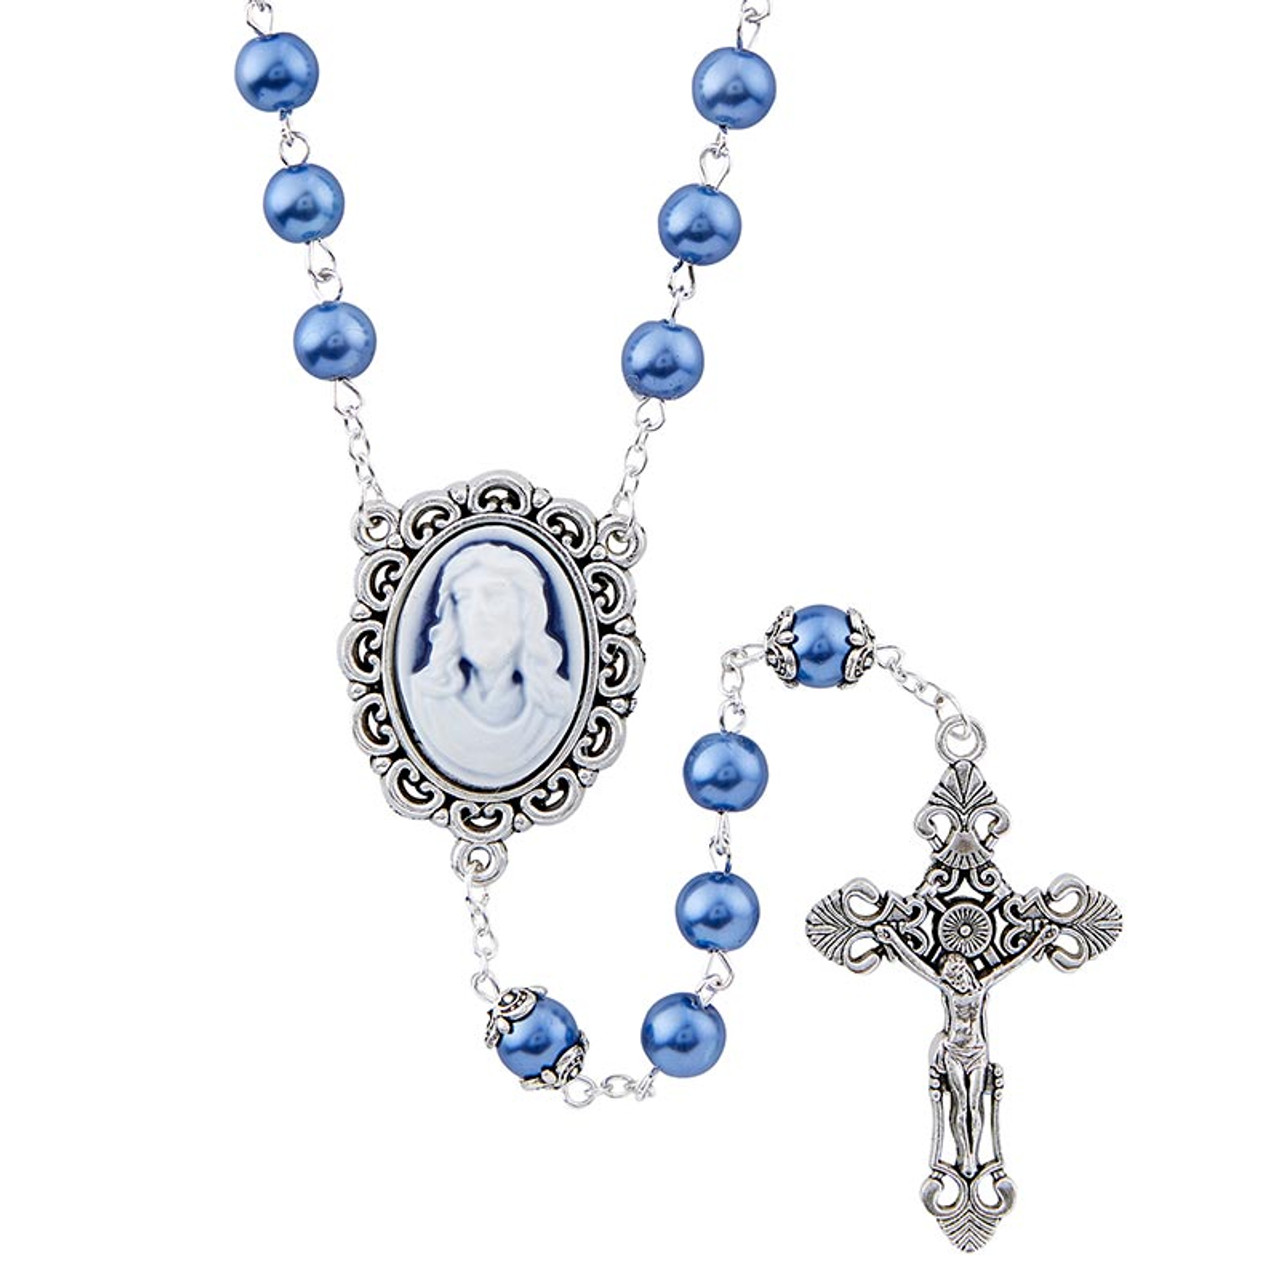 Blue Head of Christ Cameo Rosary - 6/pk - [Consumer]Autom